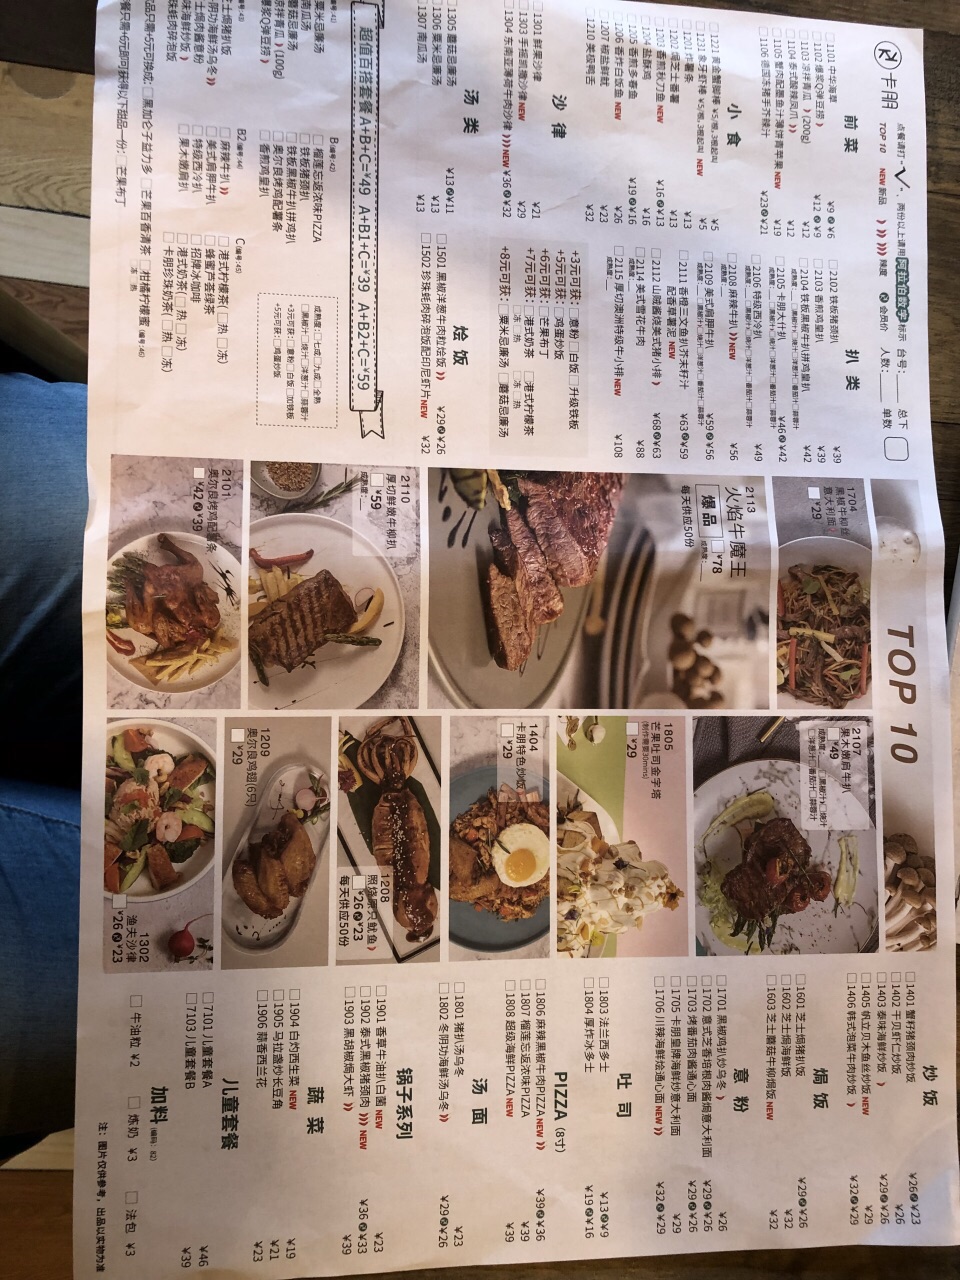 2021卡朋西餐(较场西路店)美食餐厅,还有很多其他选择,都是经典